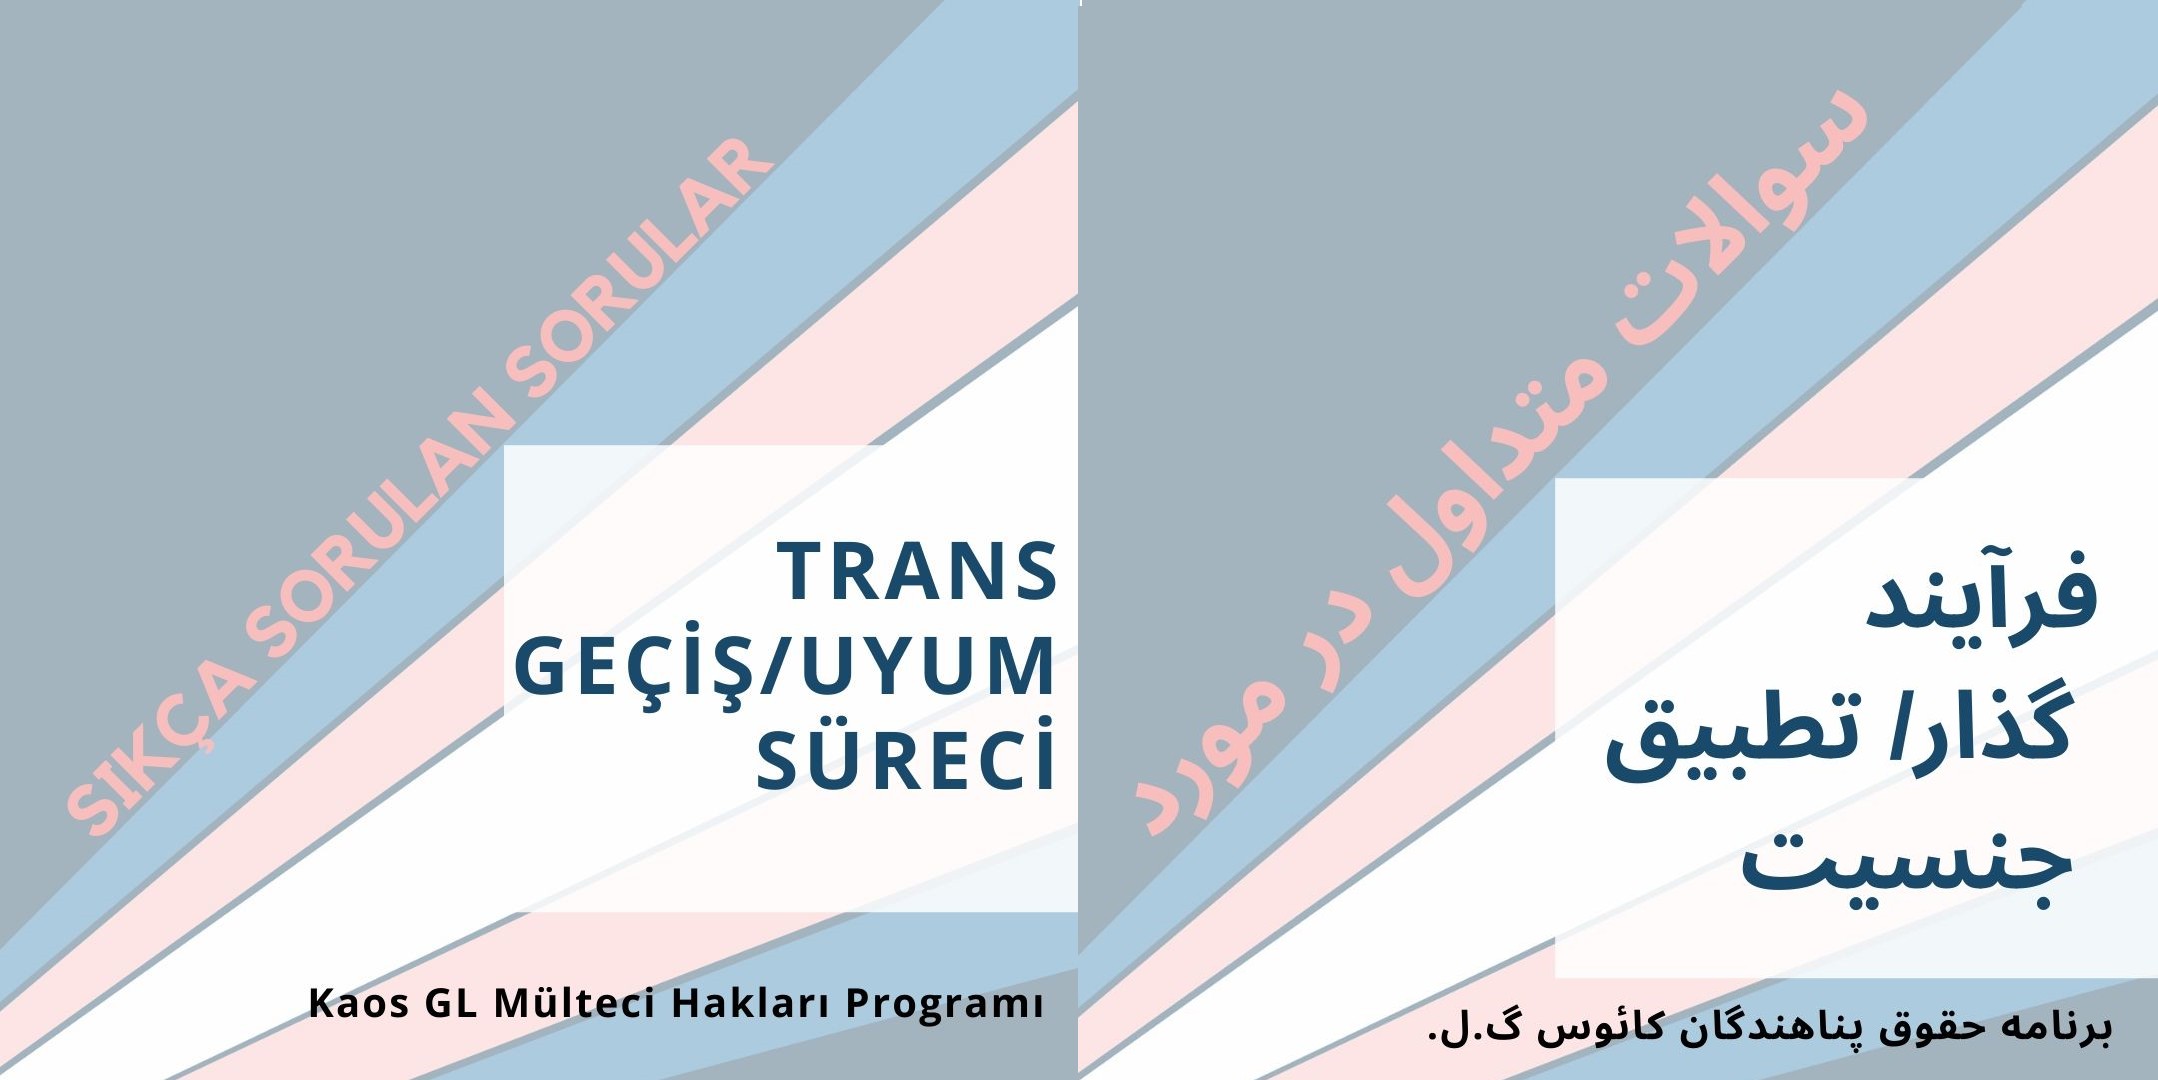 Trans Geçiş / Uyum Süreci (Farsça) | Kaos GL - LGBTİ+ Haber Portalı Haber